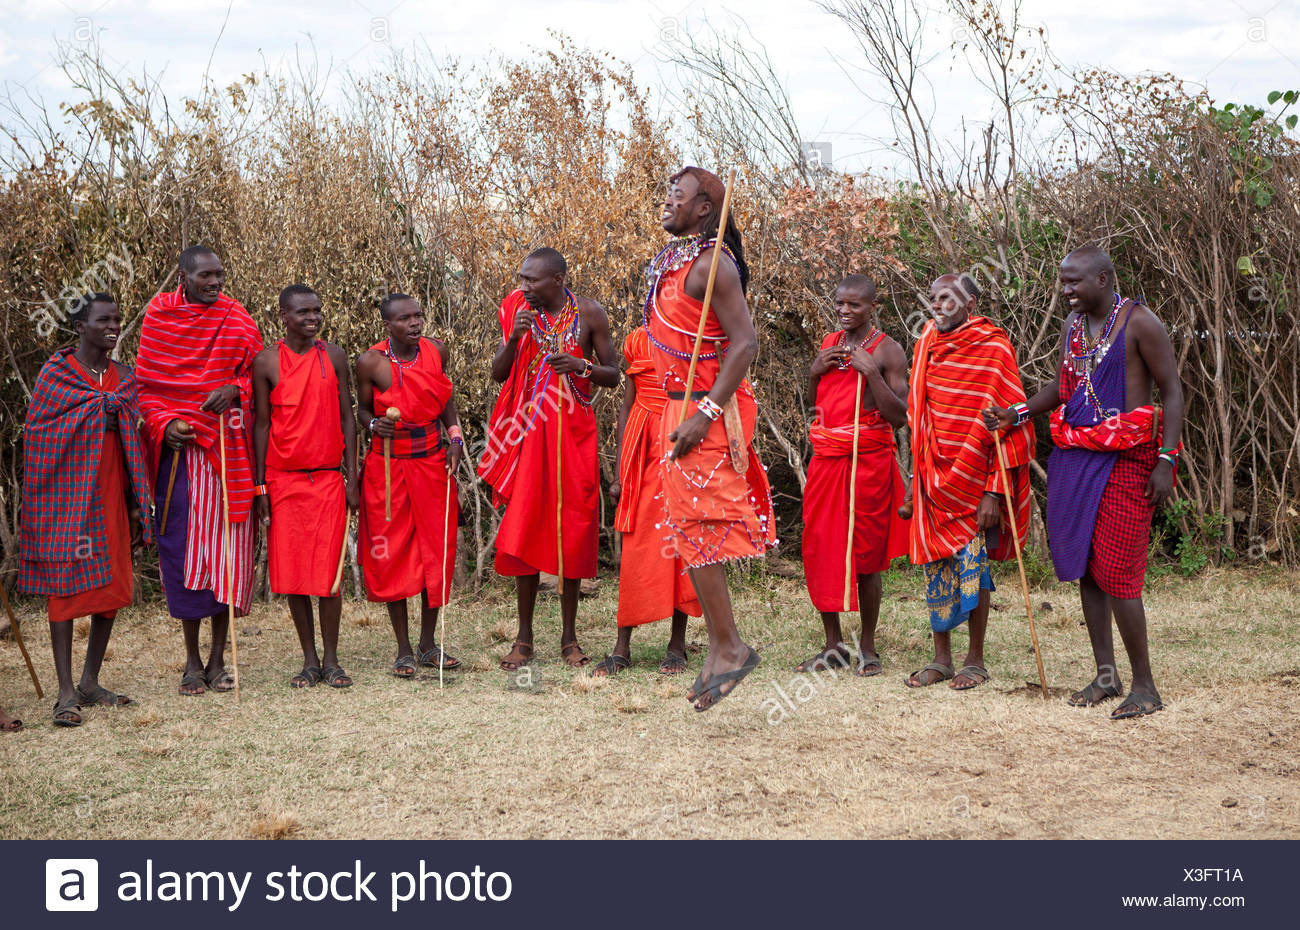 Massai Warriors Stockfotos Und Bilder Kaufen  Alamy